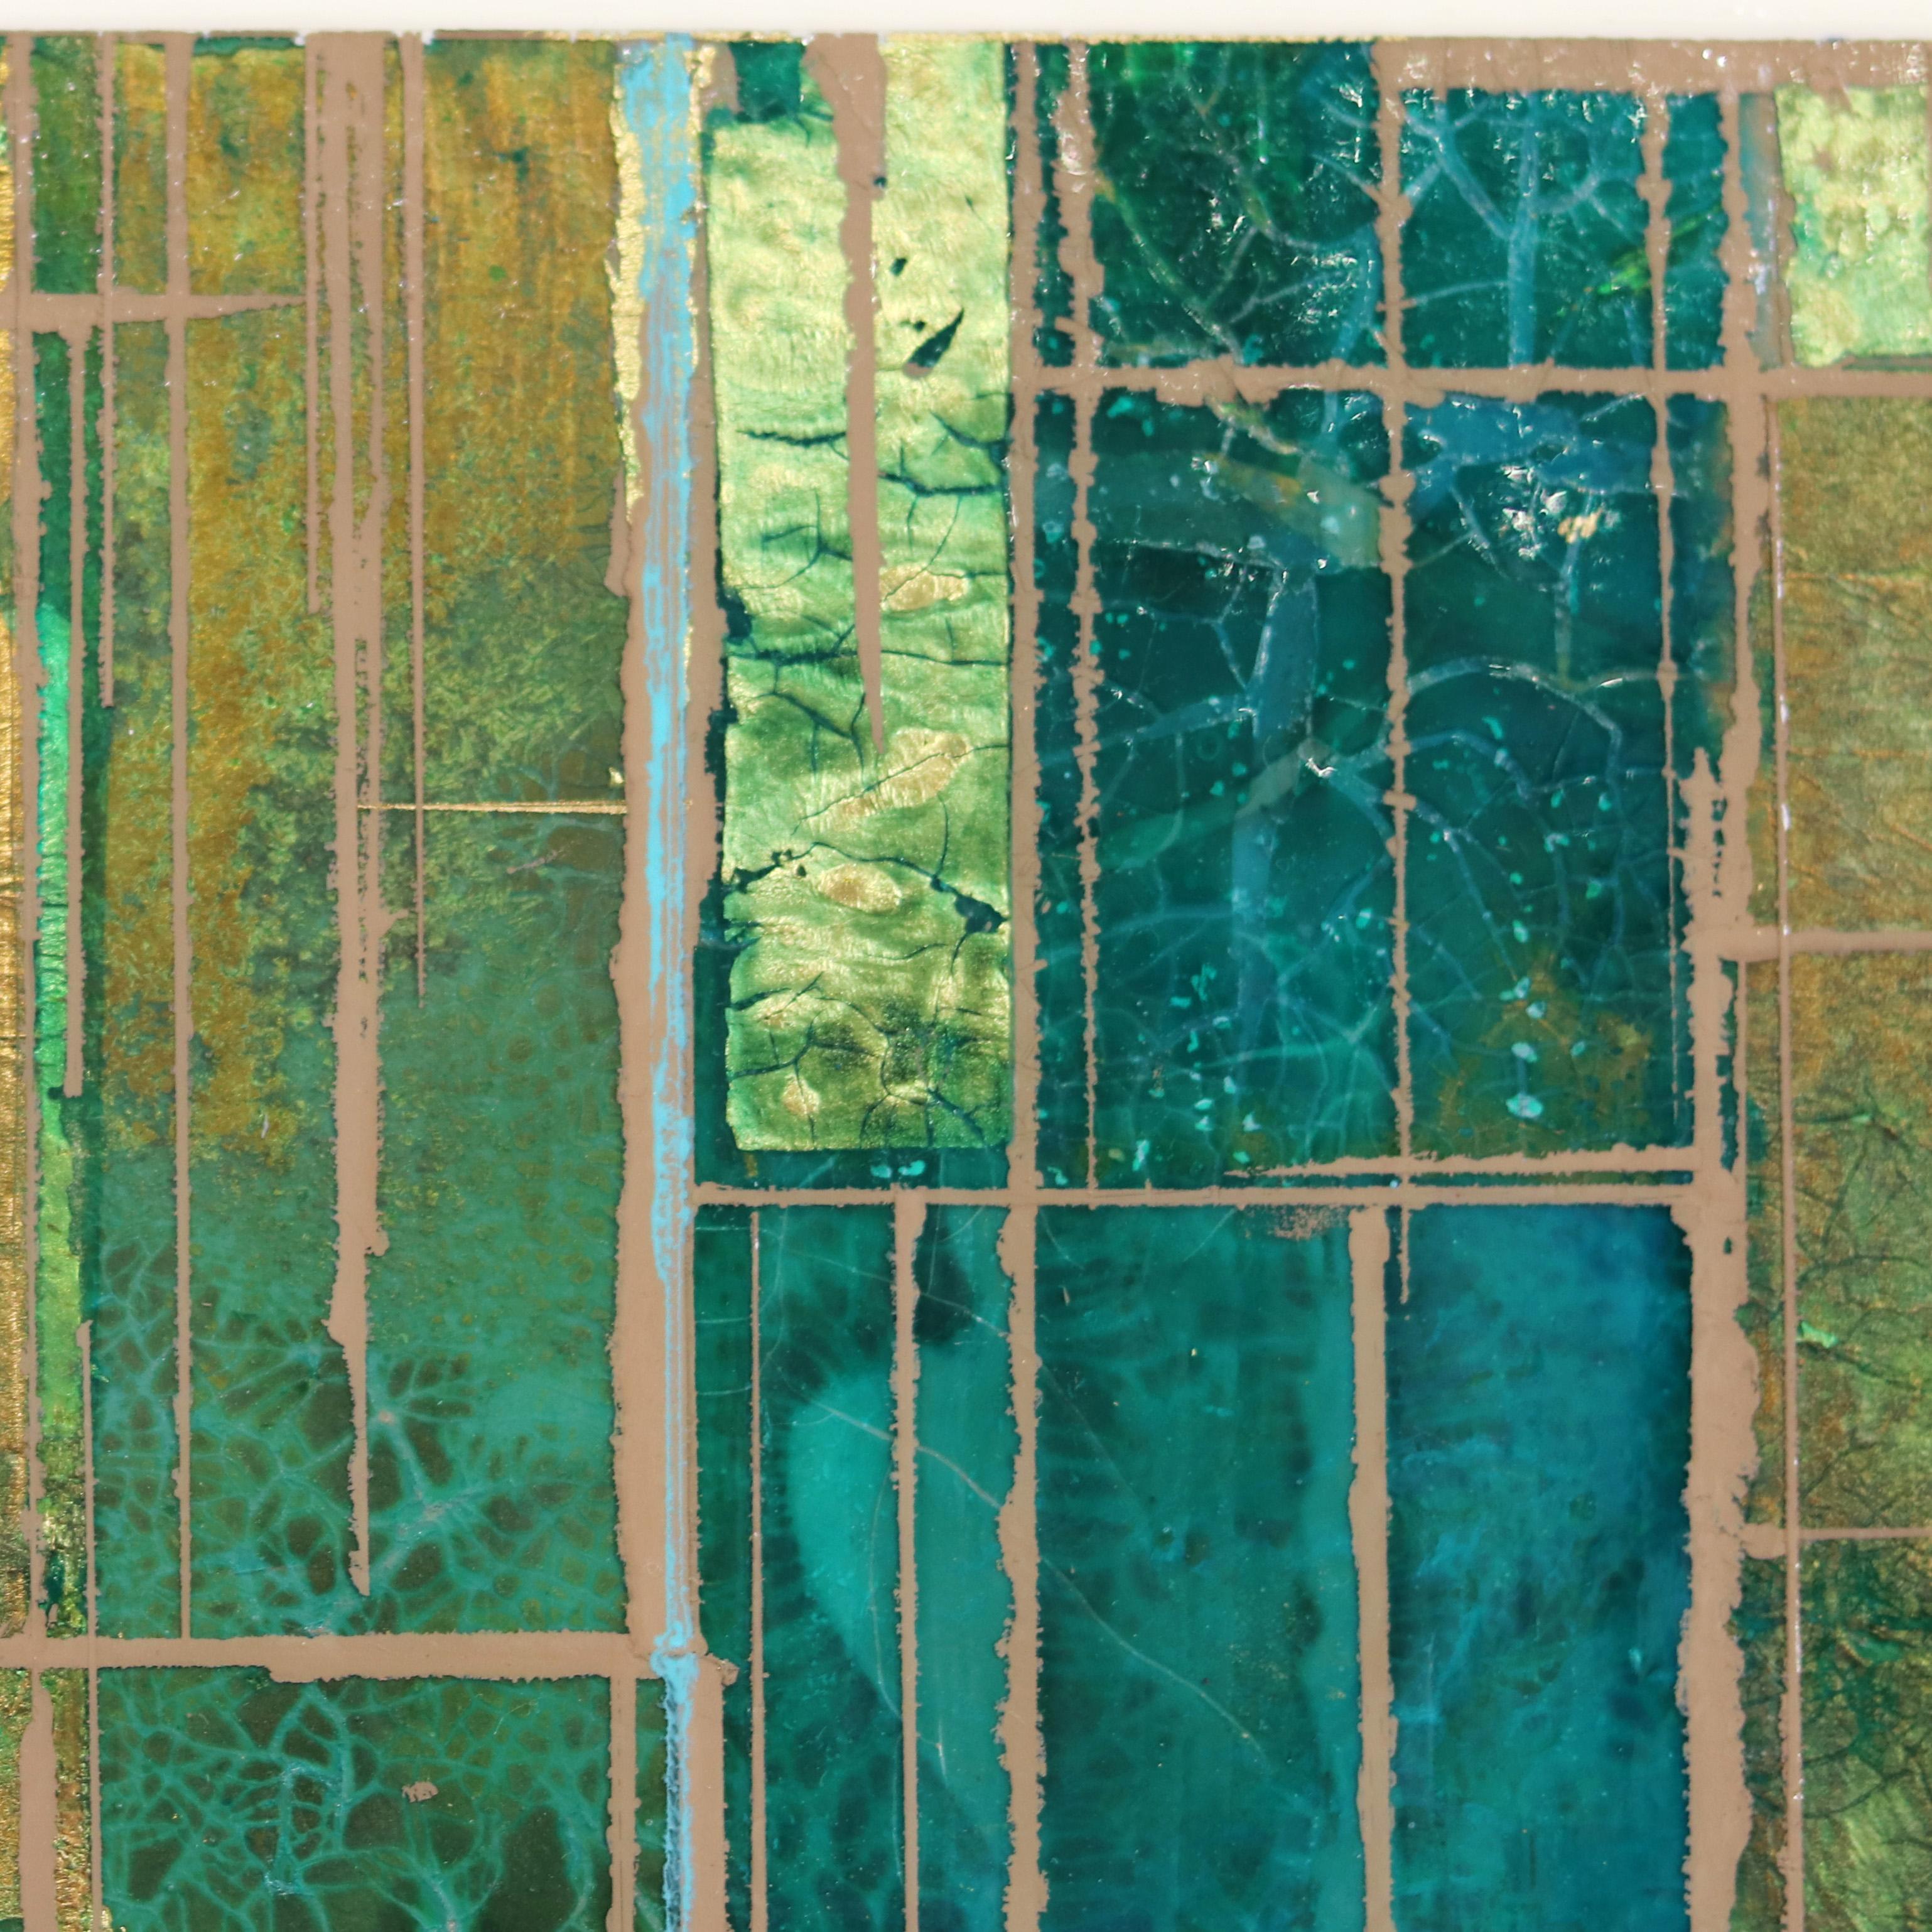 Alexander Eulerts Original-Mixed-Media-Gemälde auf Holzplatten sind abstrakte Projektionen von Welten, in denen divergierende Kräfte zu harmonischen geometrischen Interaktionen verschmelzen. Er schöpft seine Inspiration aus einer lebenslangen